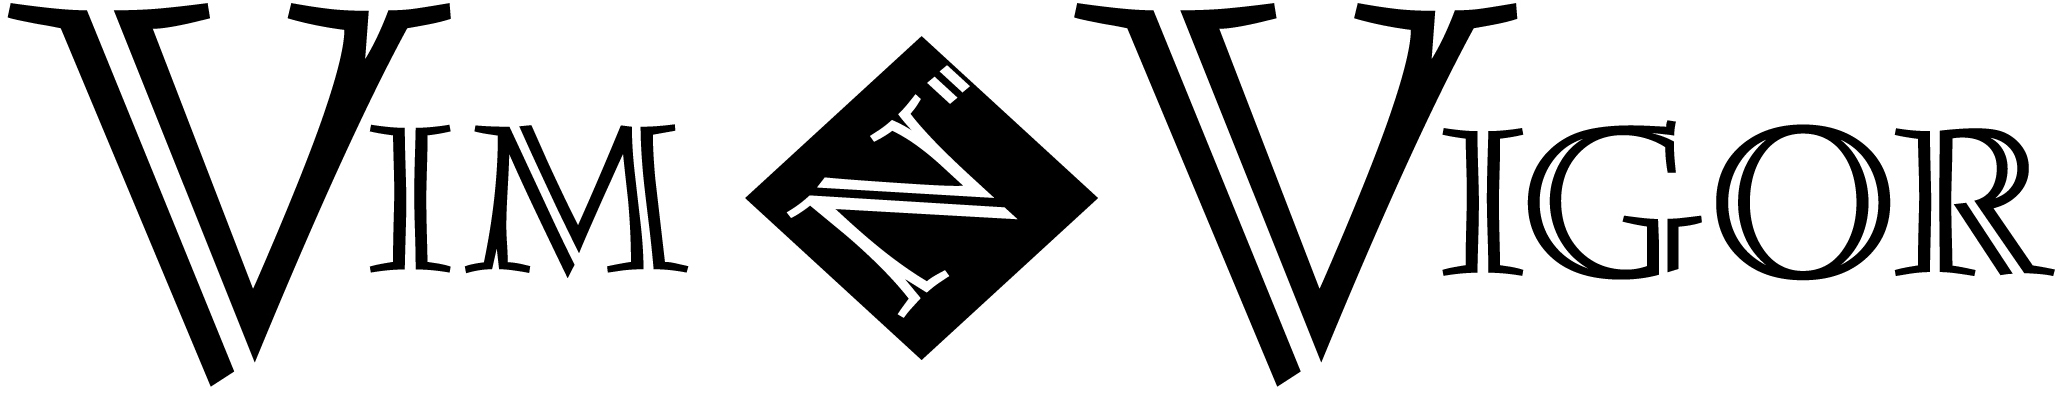 Vim N" Vigor Health & Fitness Logo